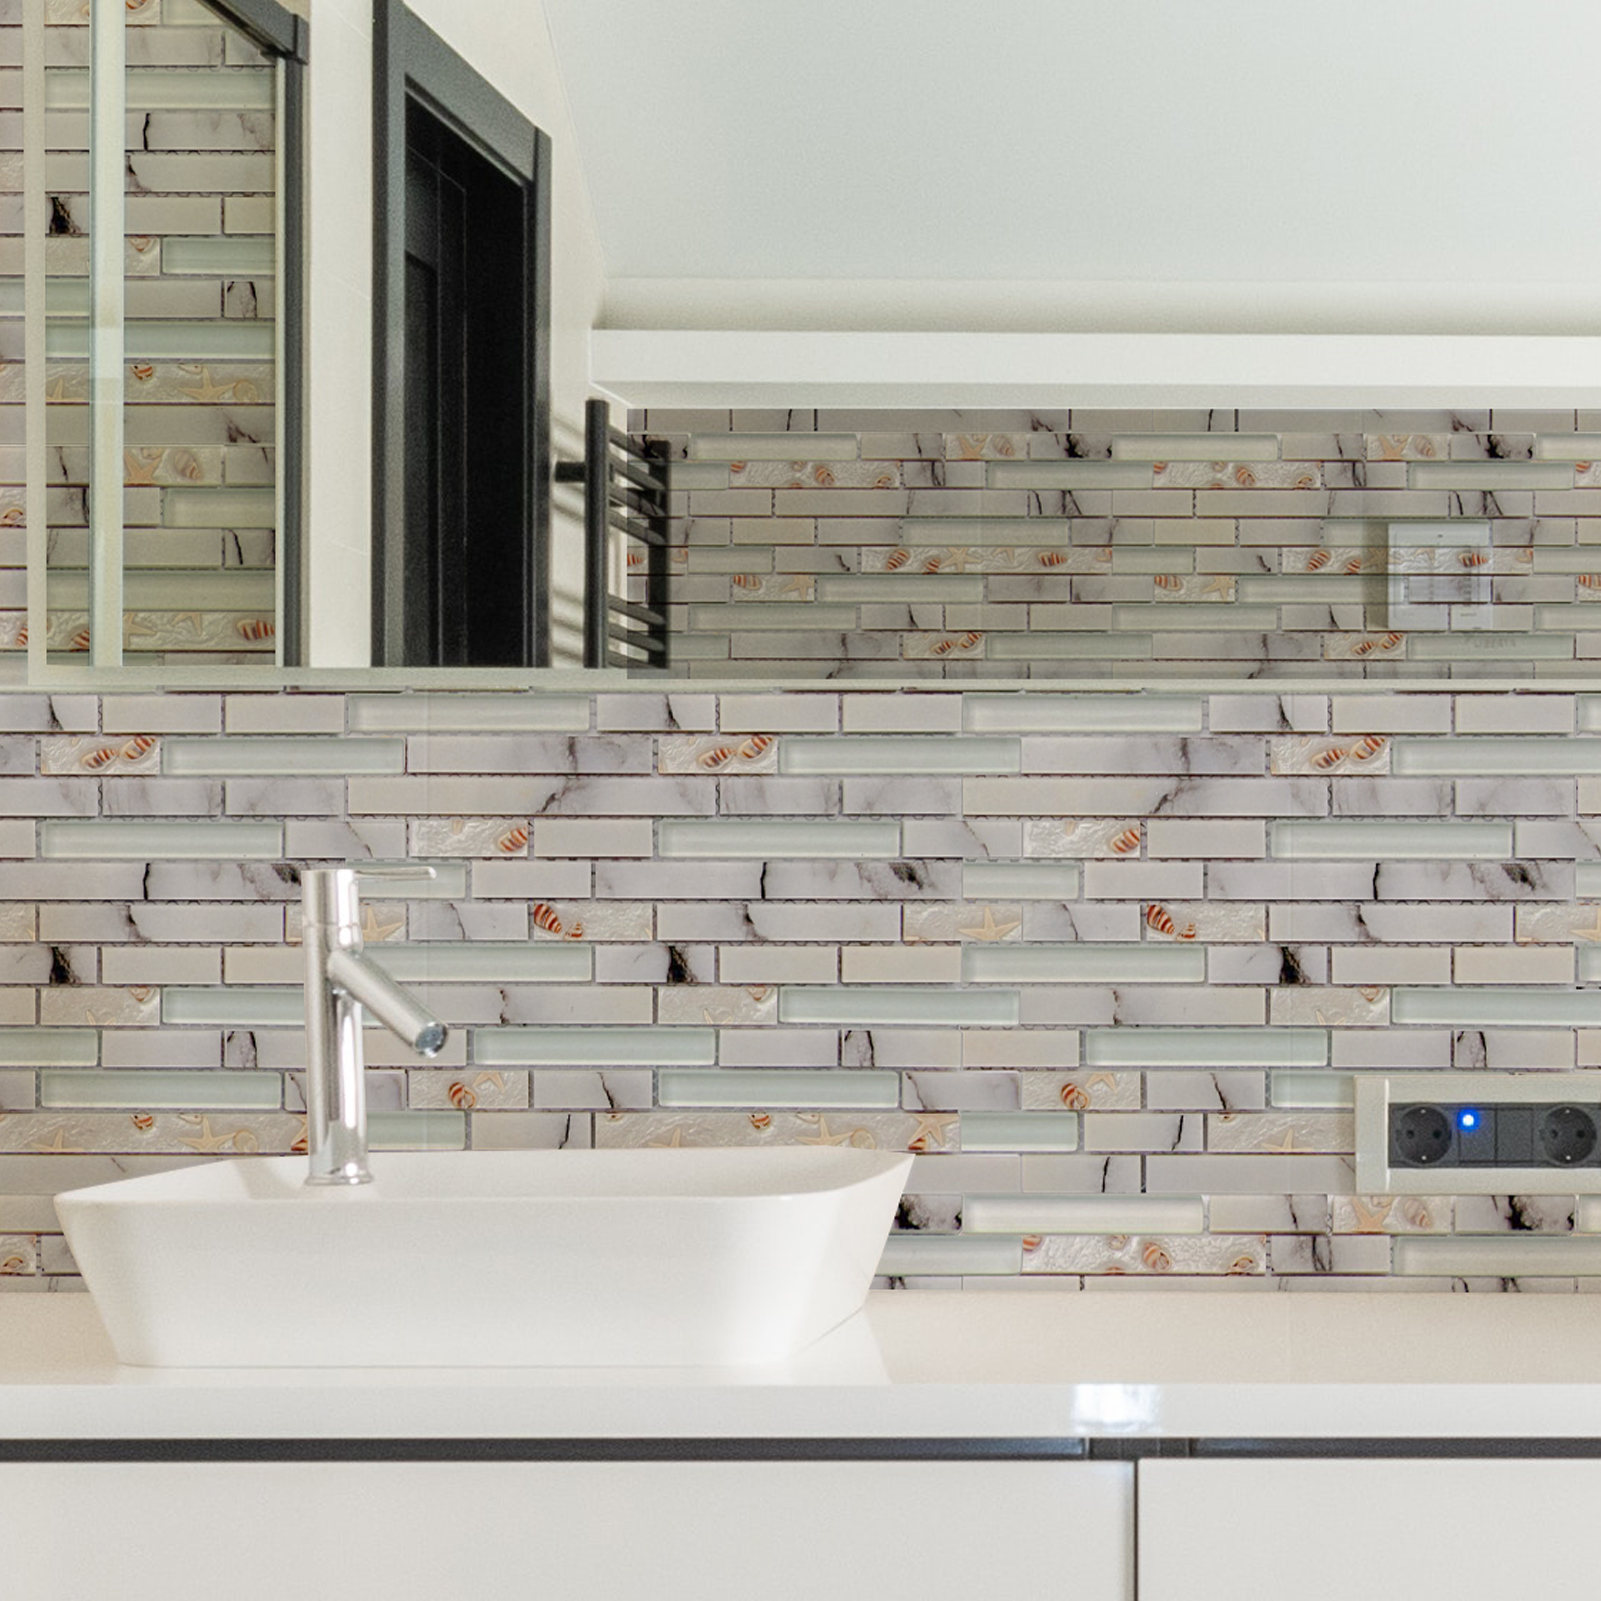 Art3d Decorative Tile Starfish and Conch Mosaic Tile for Kitchen Backsplash or Bathroom Backsplash (5 Pack)